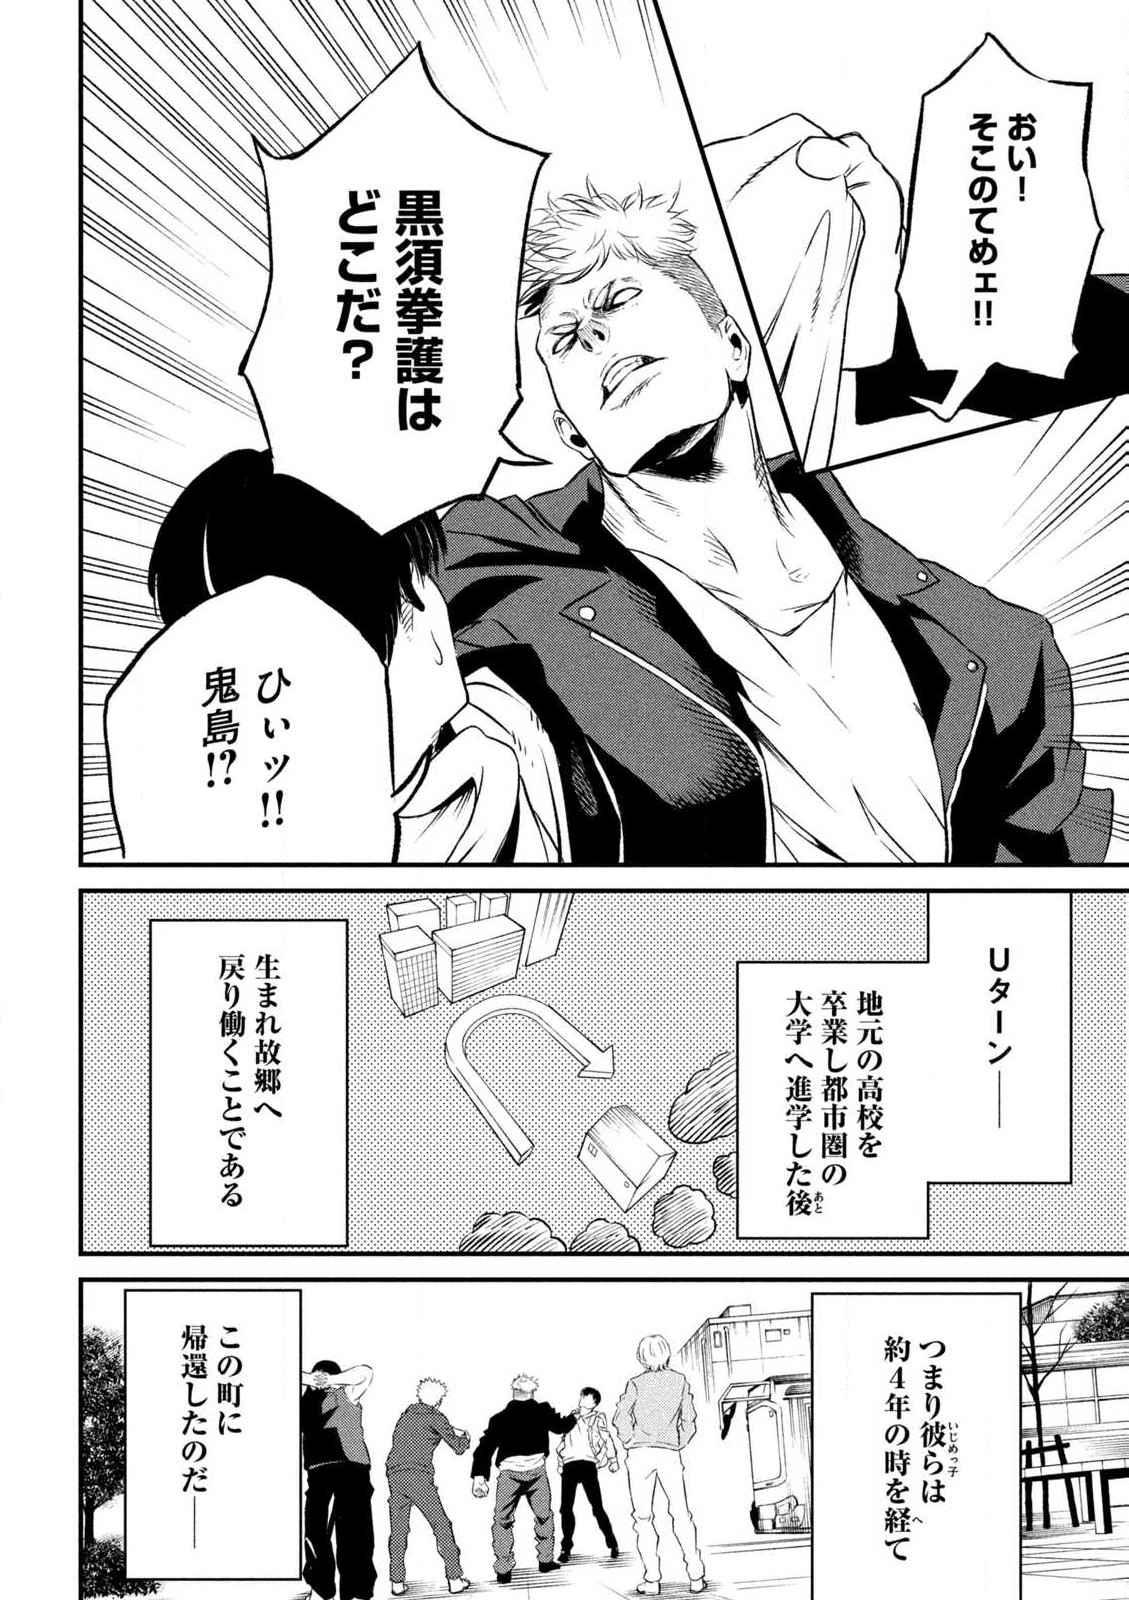 無職格闘 -ニート・コンバット- 第1話 - Page 16